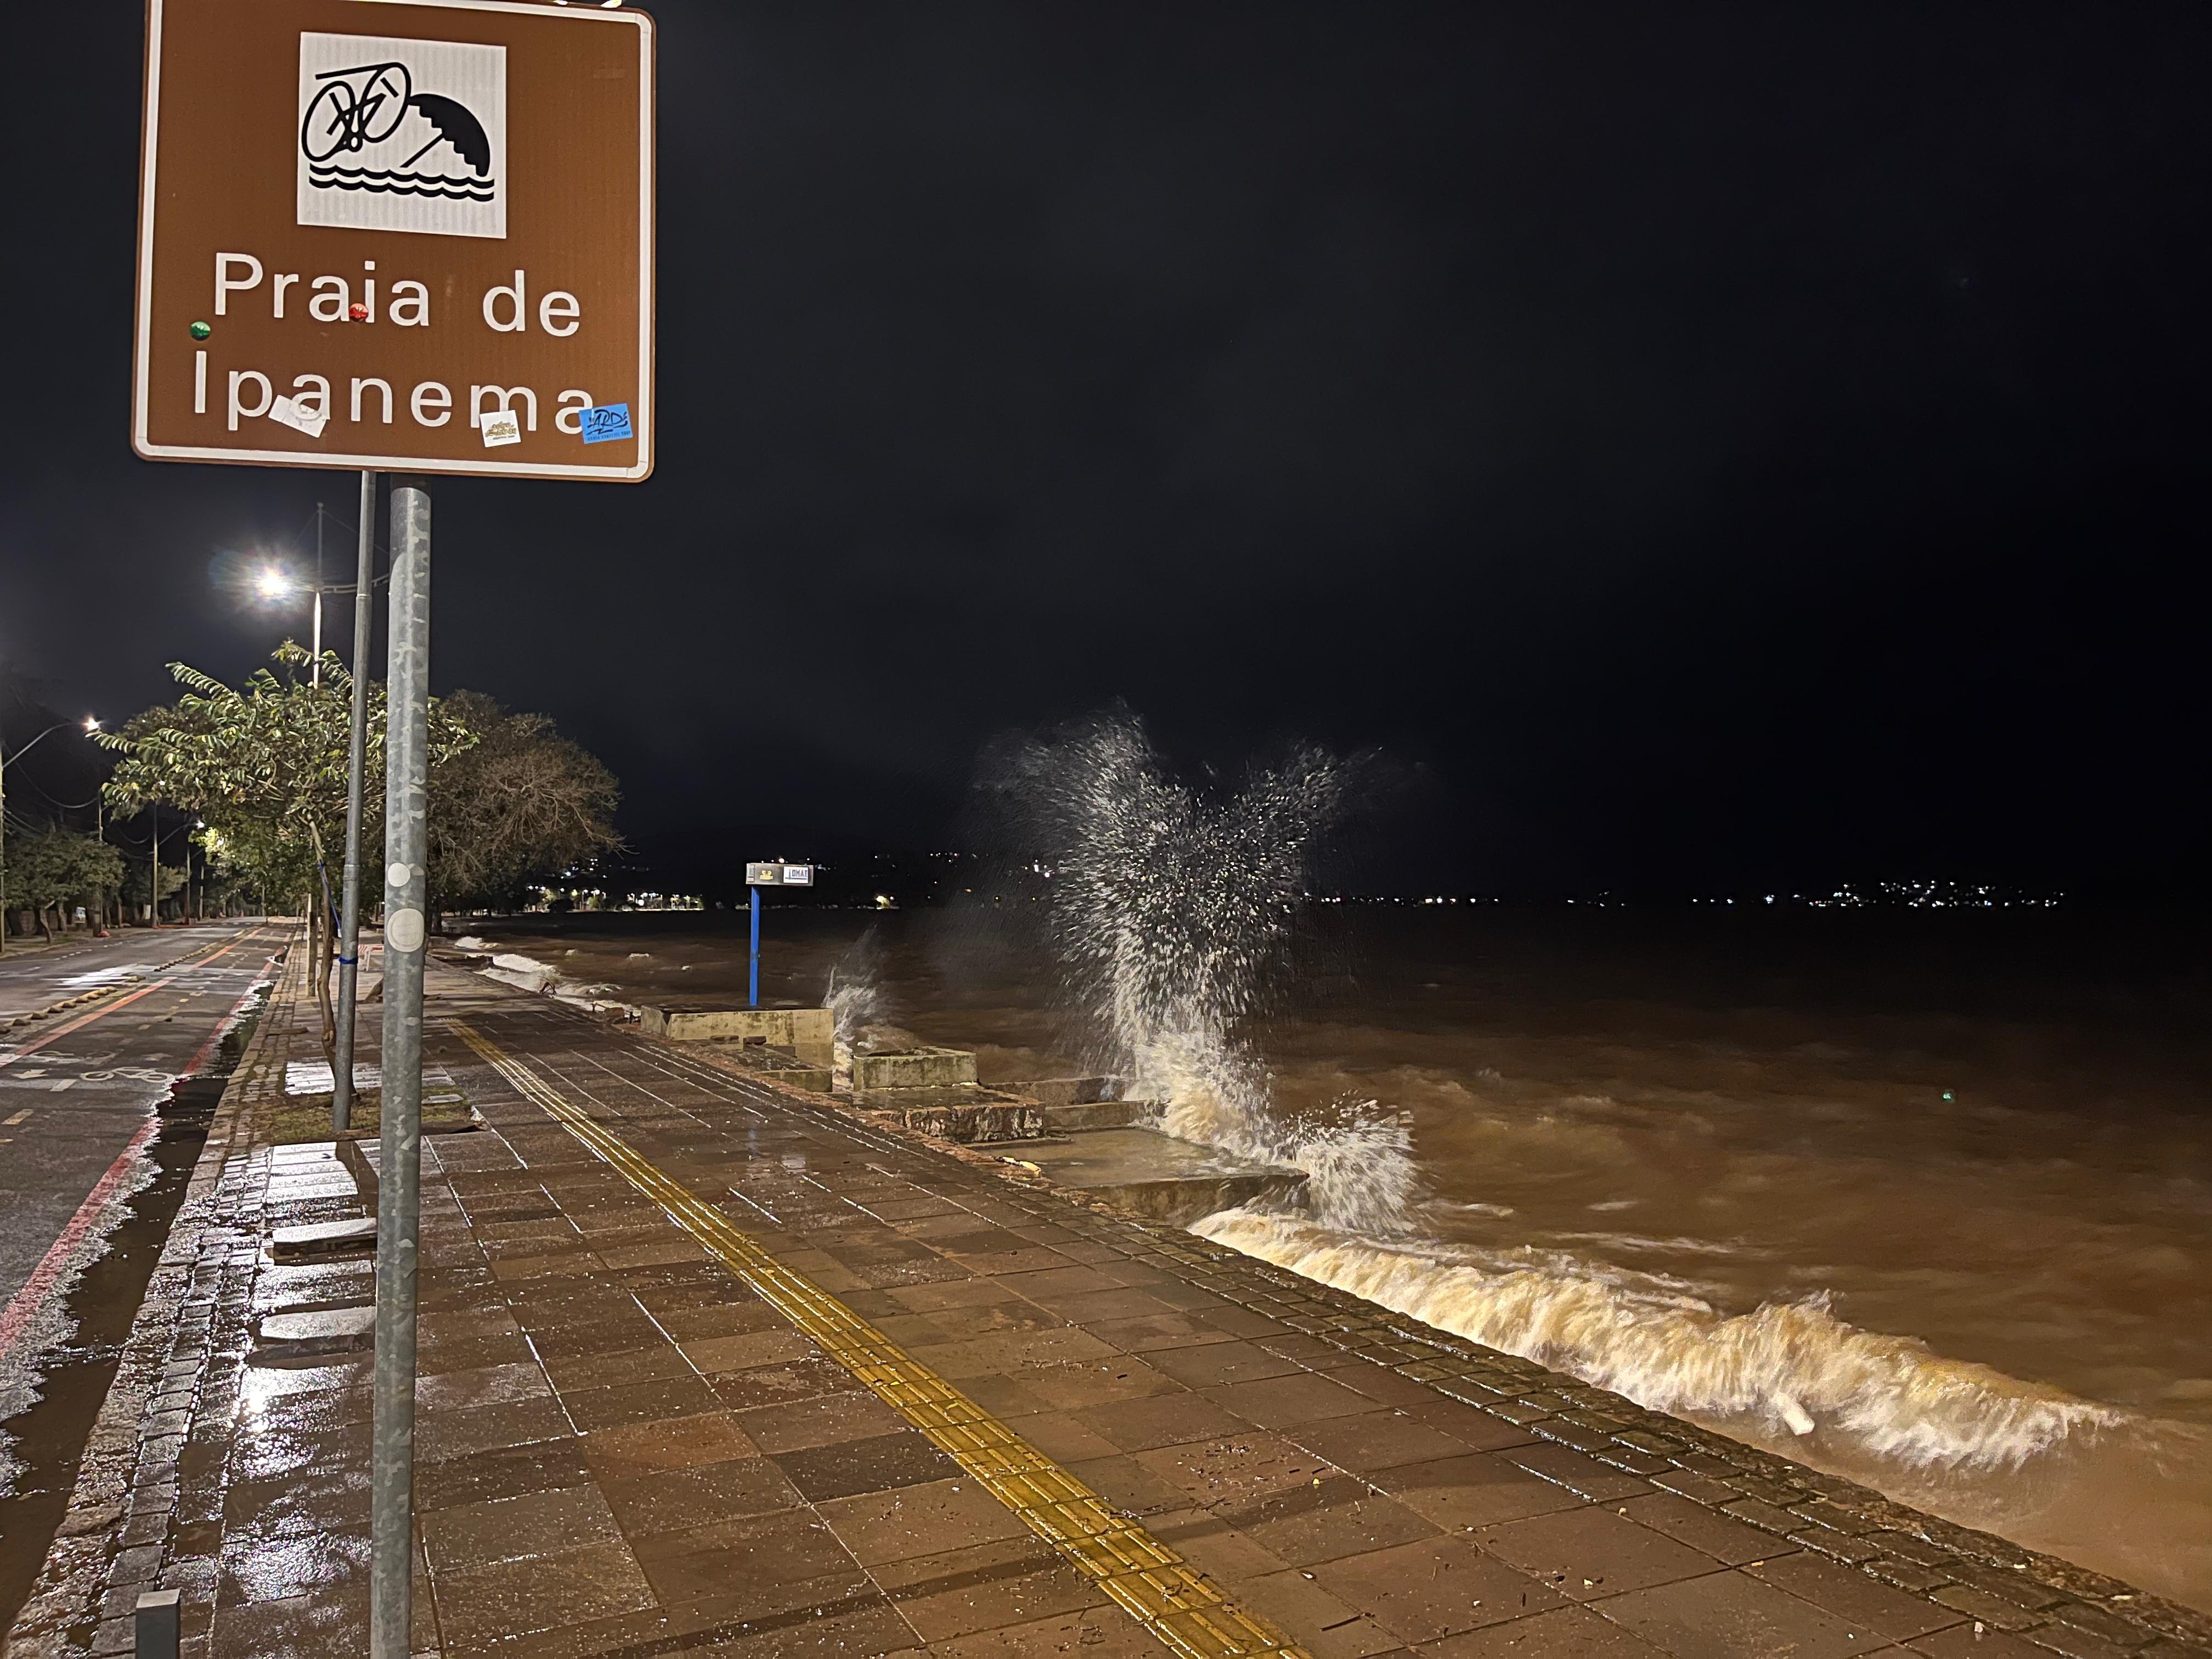 Apesar de trégua da chuva, Guaíba não deve voltar a ficar abaixo da cota de alerta antes do final da semana, projeta UFRGS